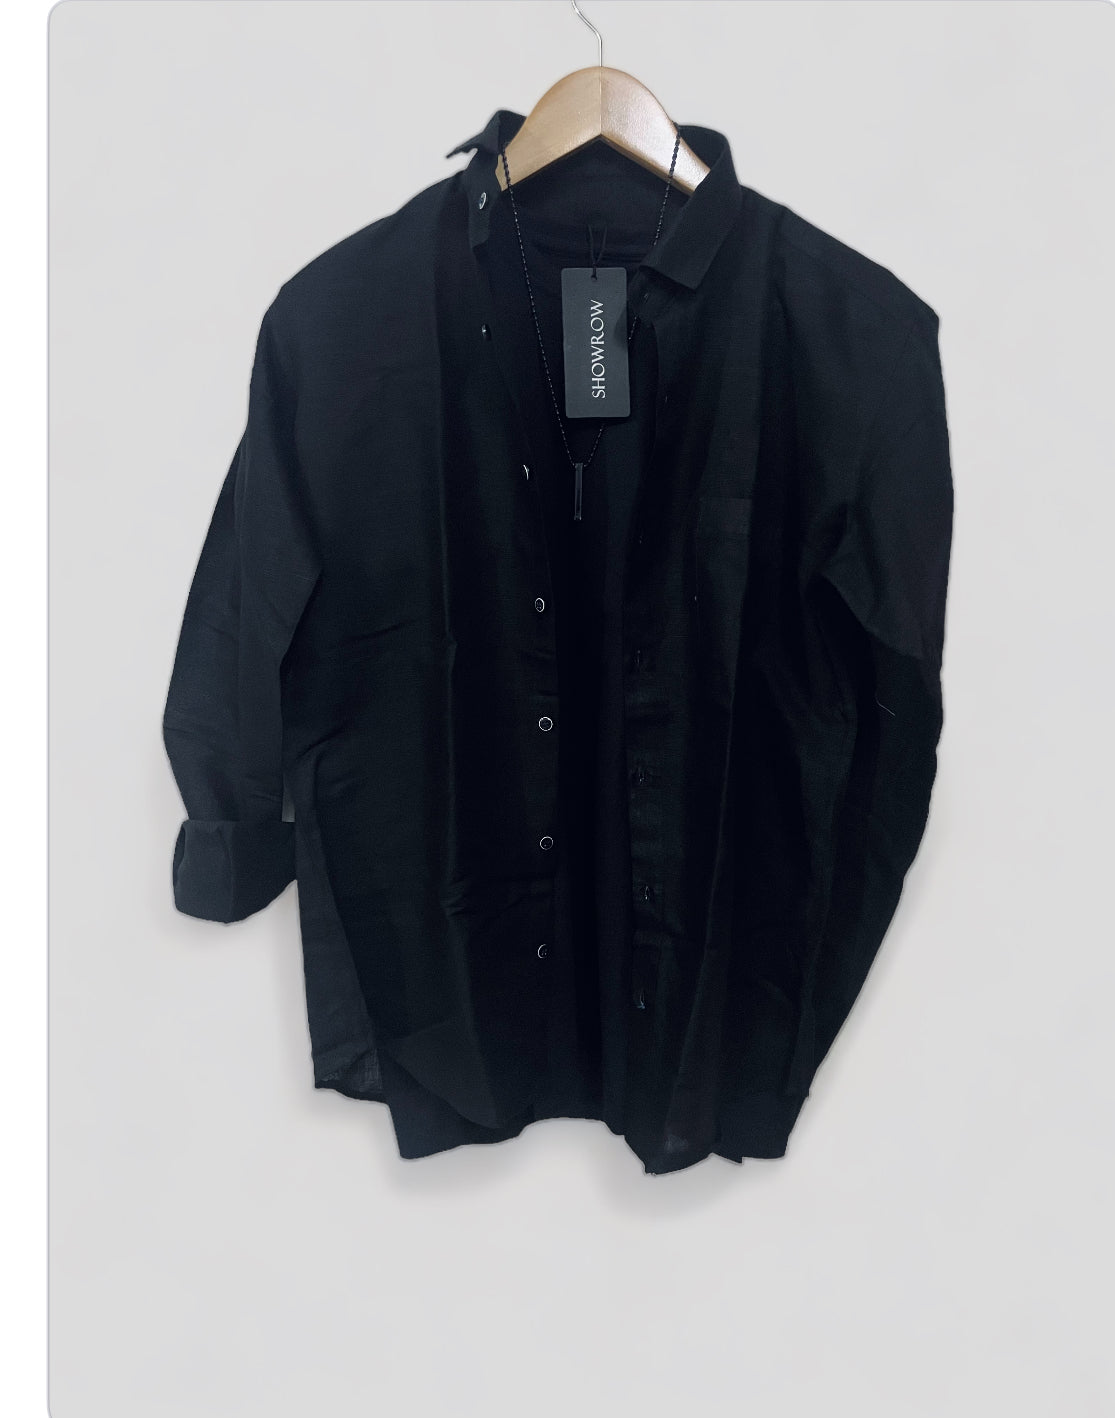 Linen- Black Full sleeves shirt